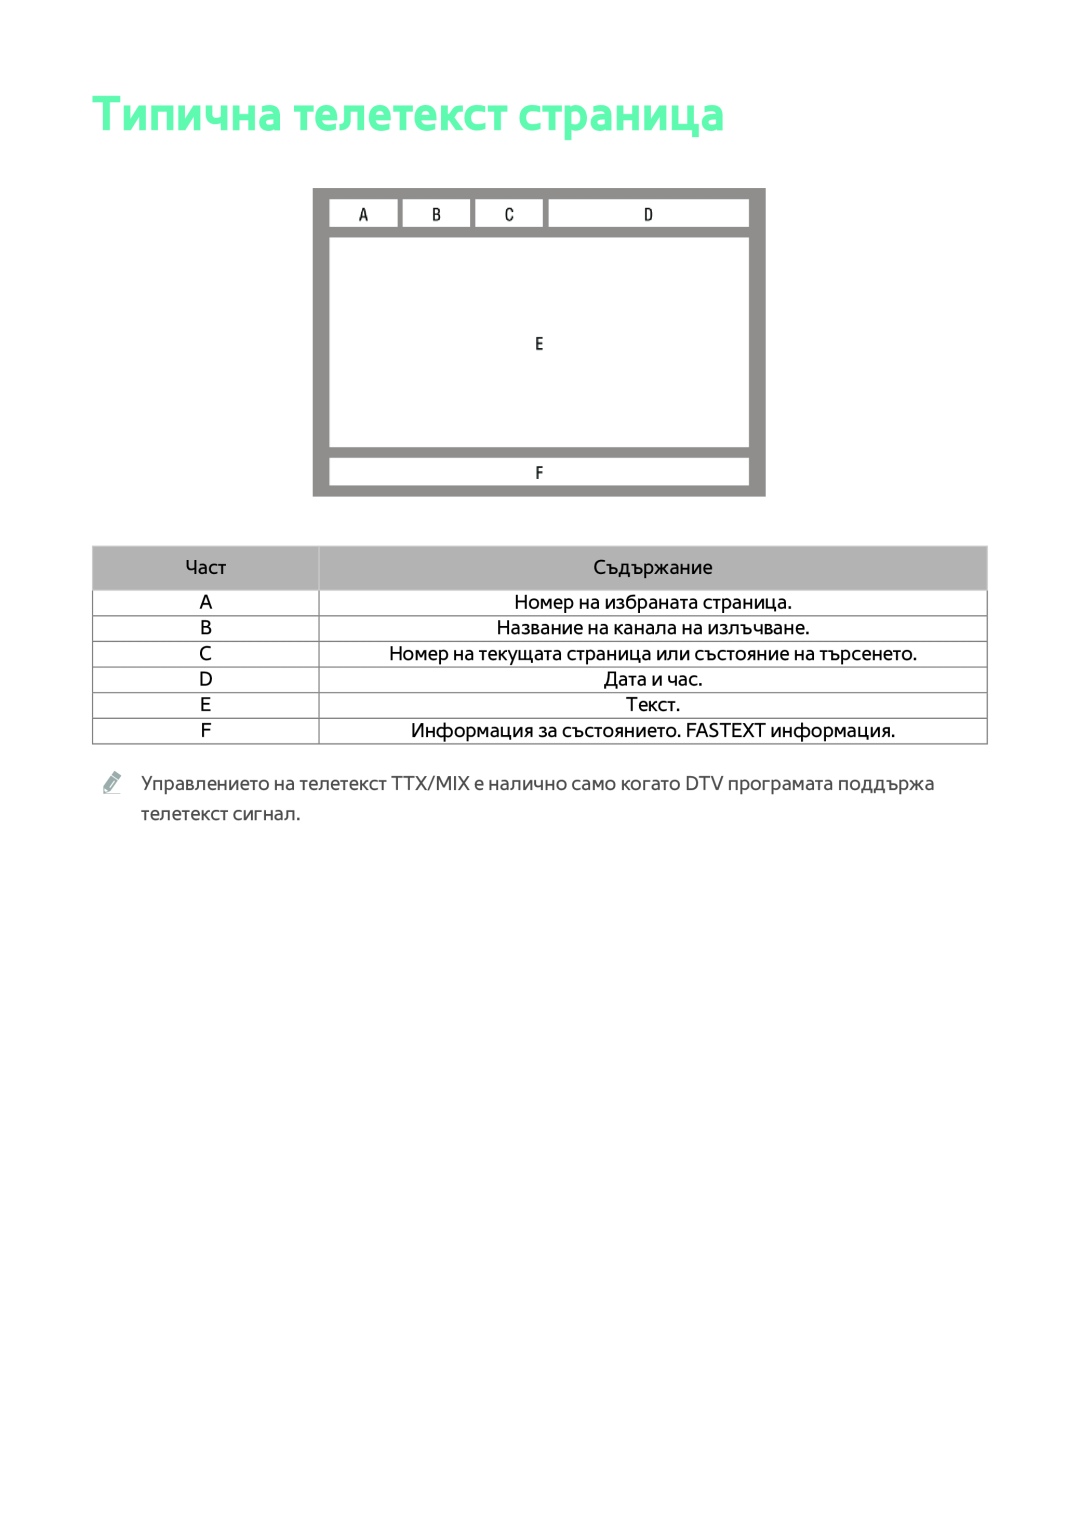 Samsung BD-F6900/EN manual Типична телетекст страница, Част, Съдържание, Информация за състоянието. FASTEXT информация 